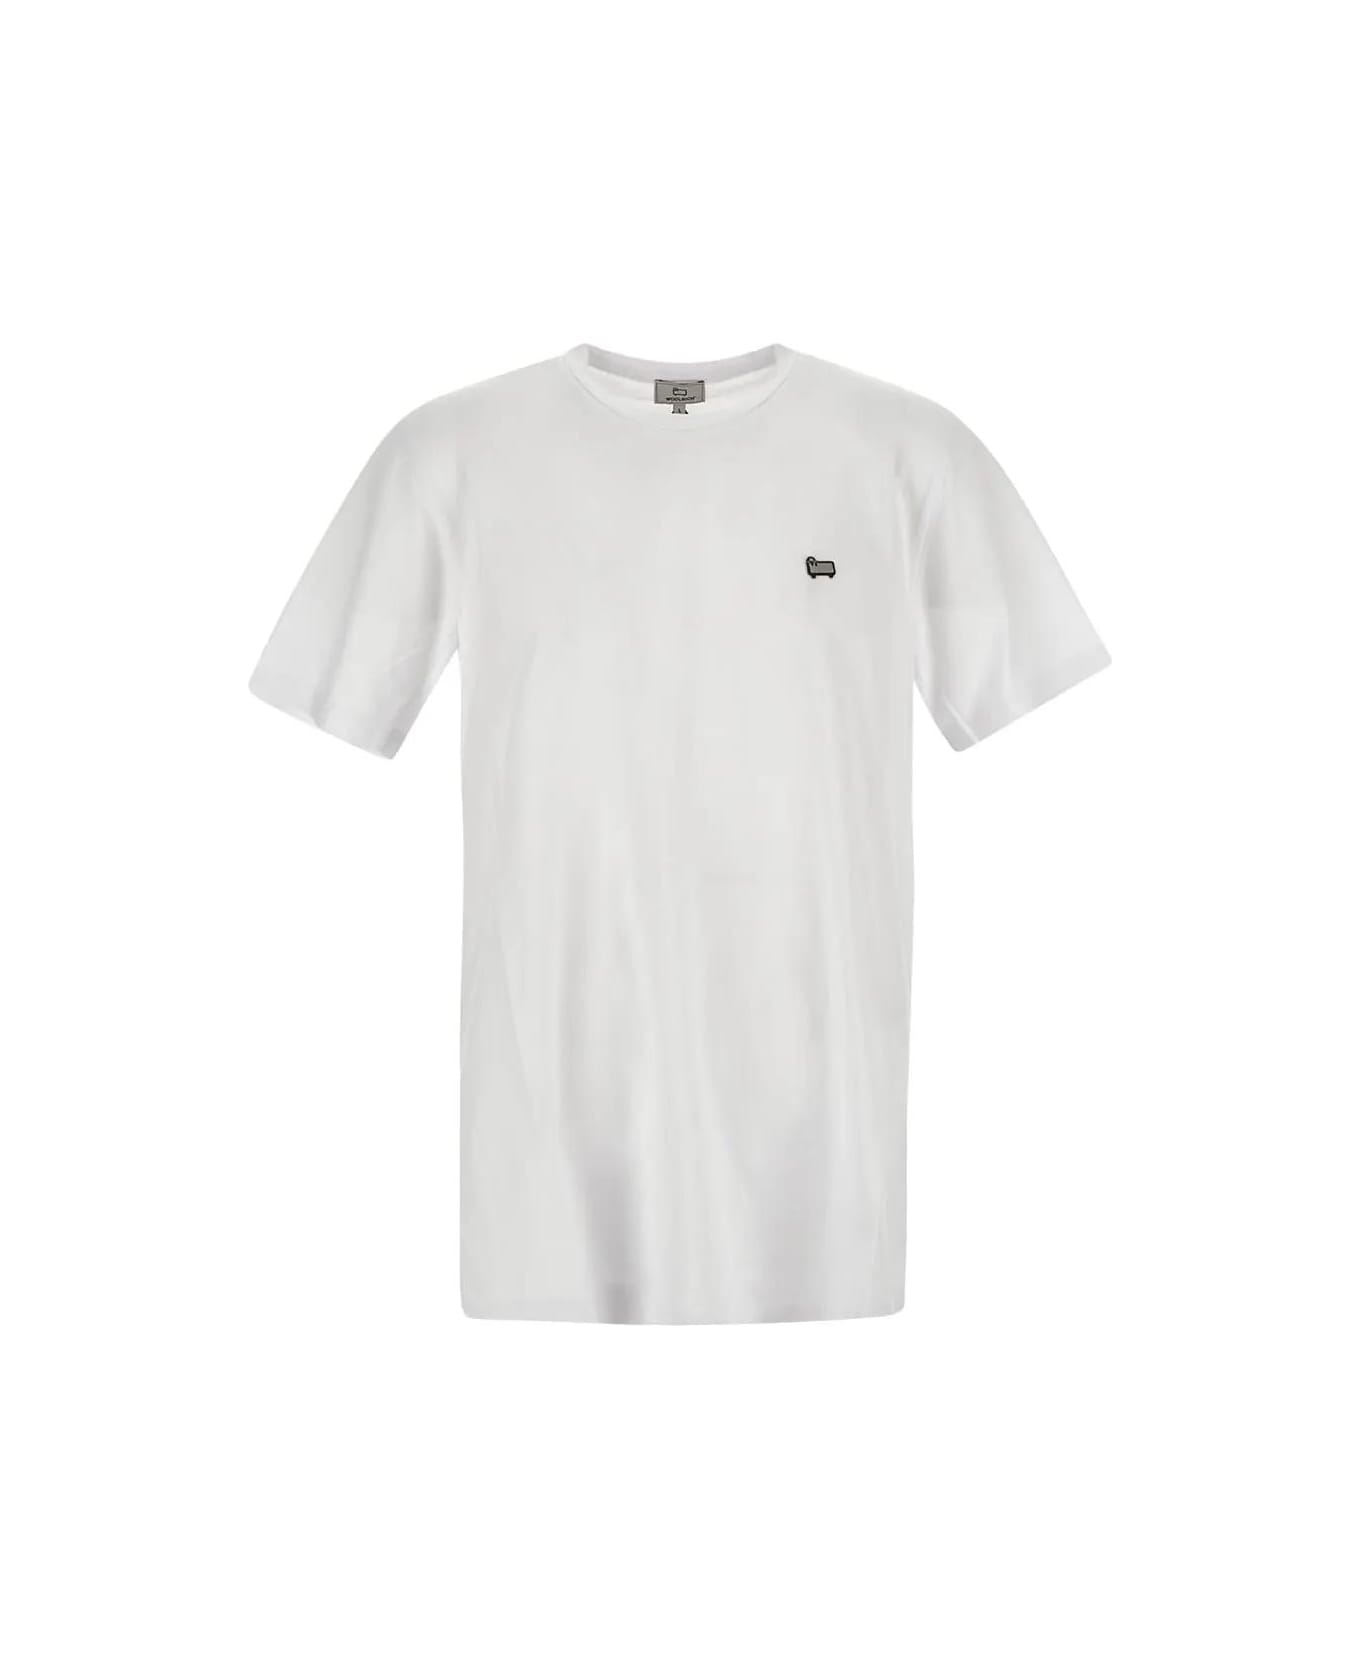 Woolrich Sheep T-shirt - Bright White